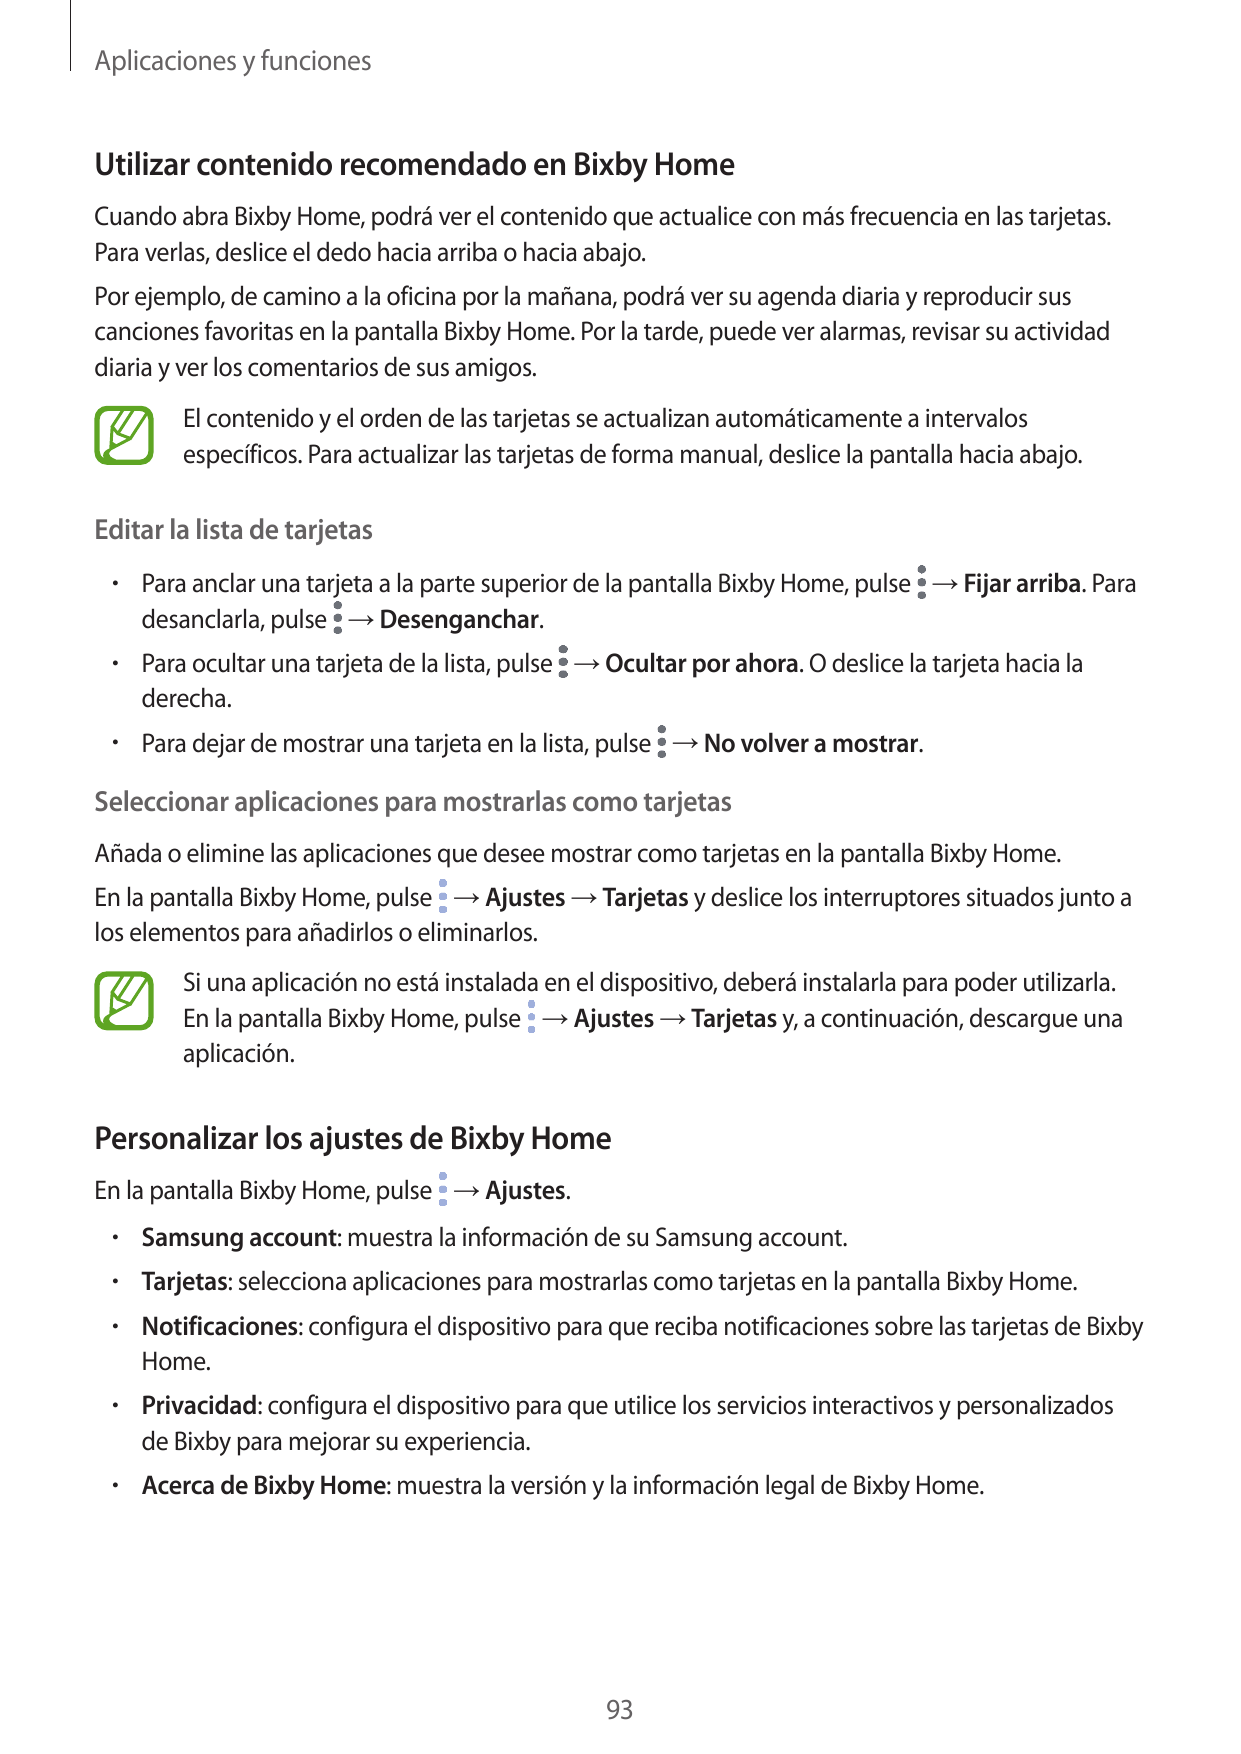 Aplicaciones y funcionesUtilizar contenido recomendado en Bixby HomeCuando abra Bixby Home, podrá ver el contenido que actualice